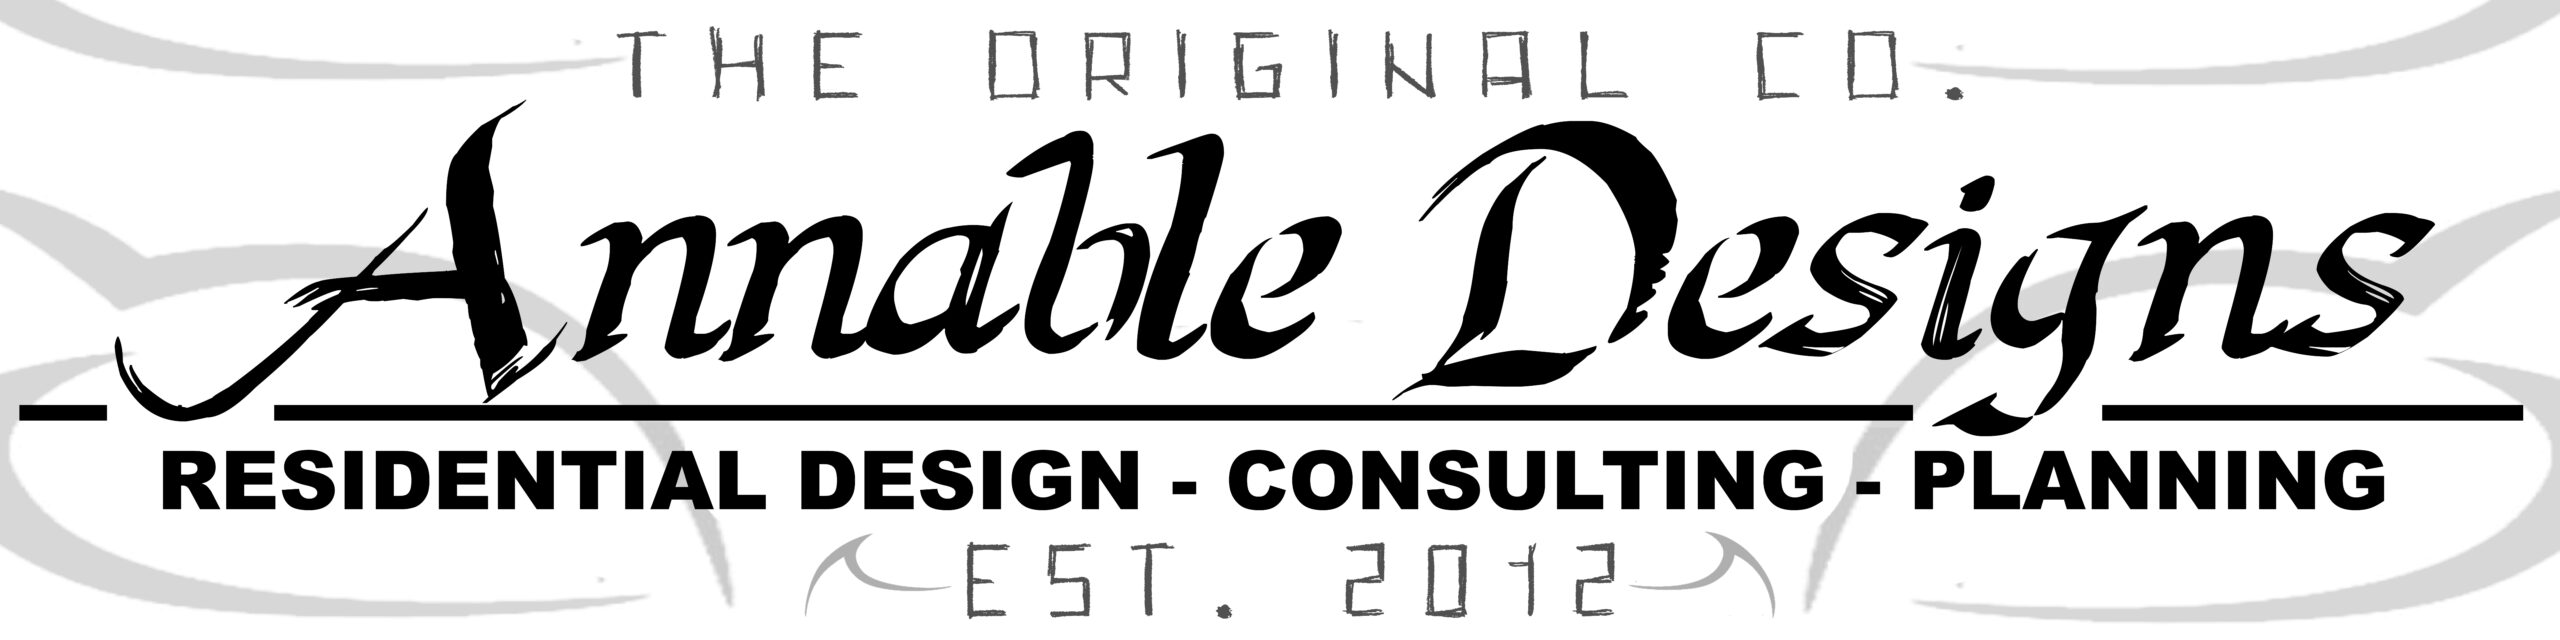 logo - Annable Designs Co. Ltd.